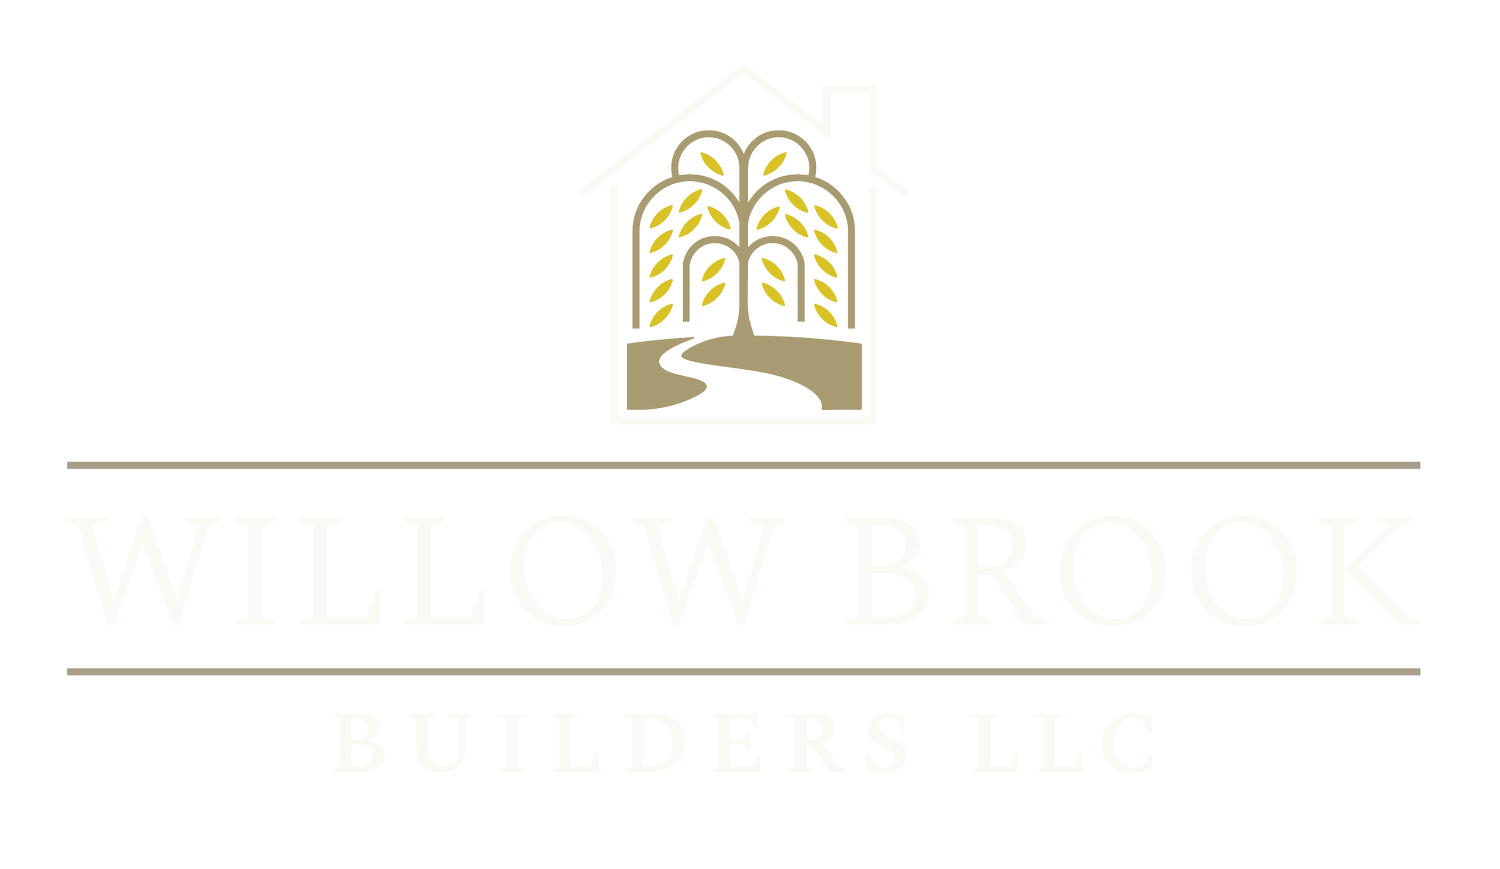 Willow Brook Builders LLC